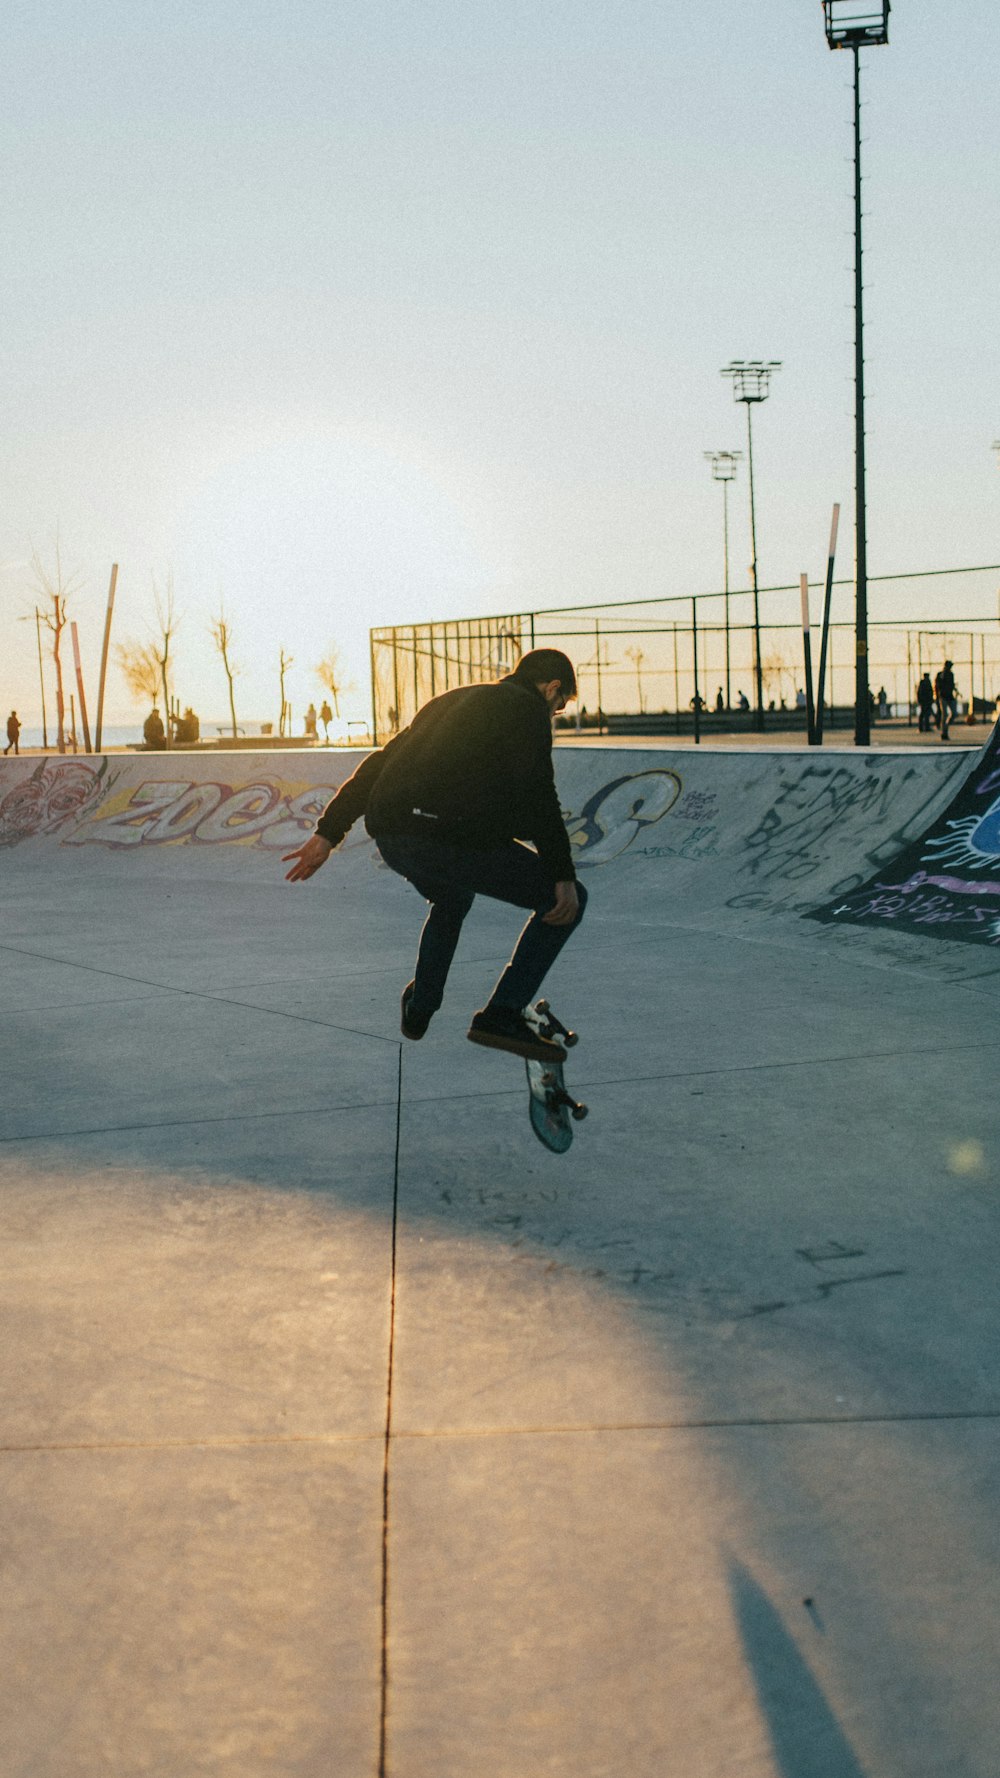 man in black jacket riding on black skateboard during daytime